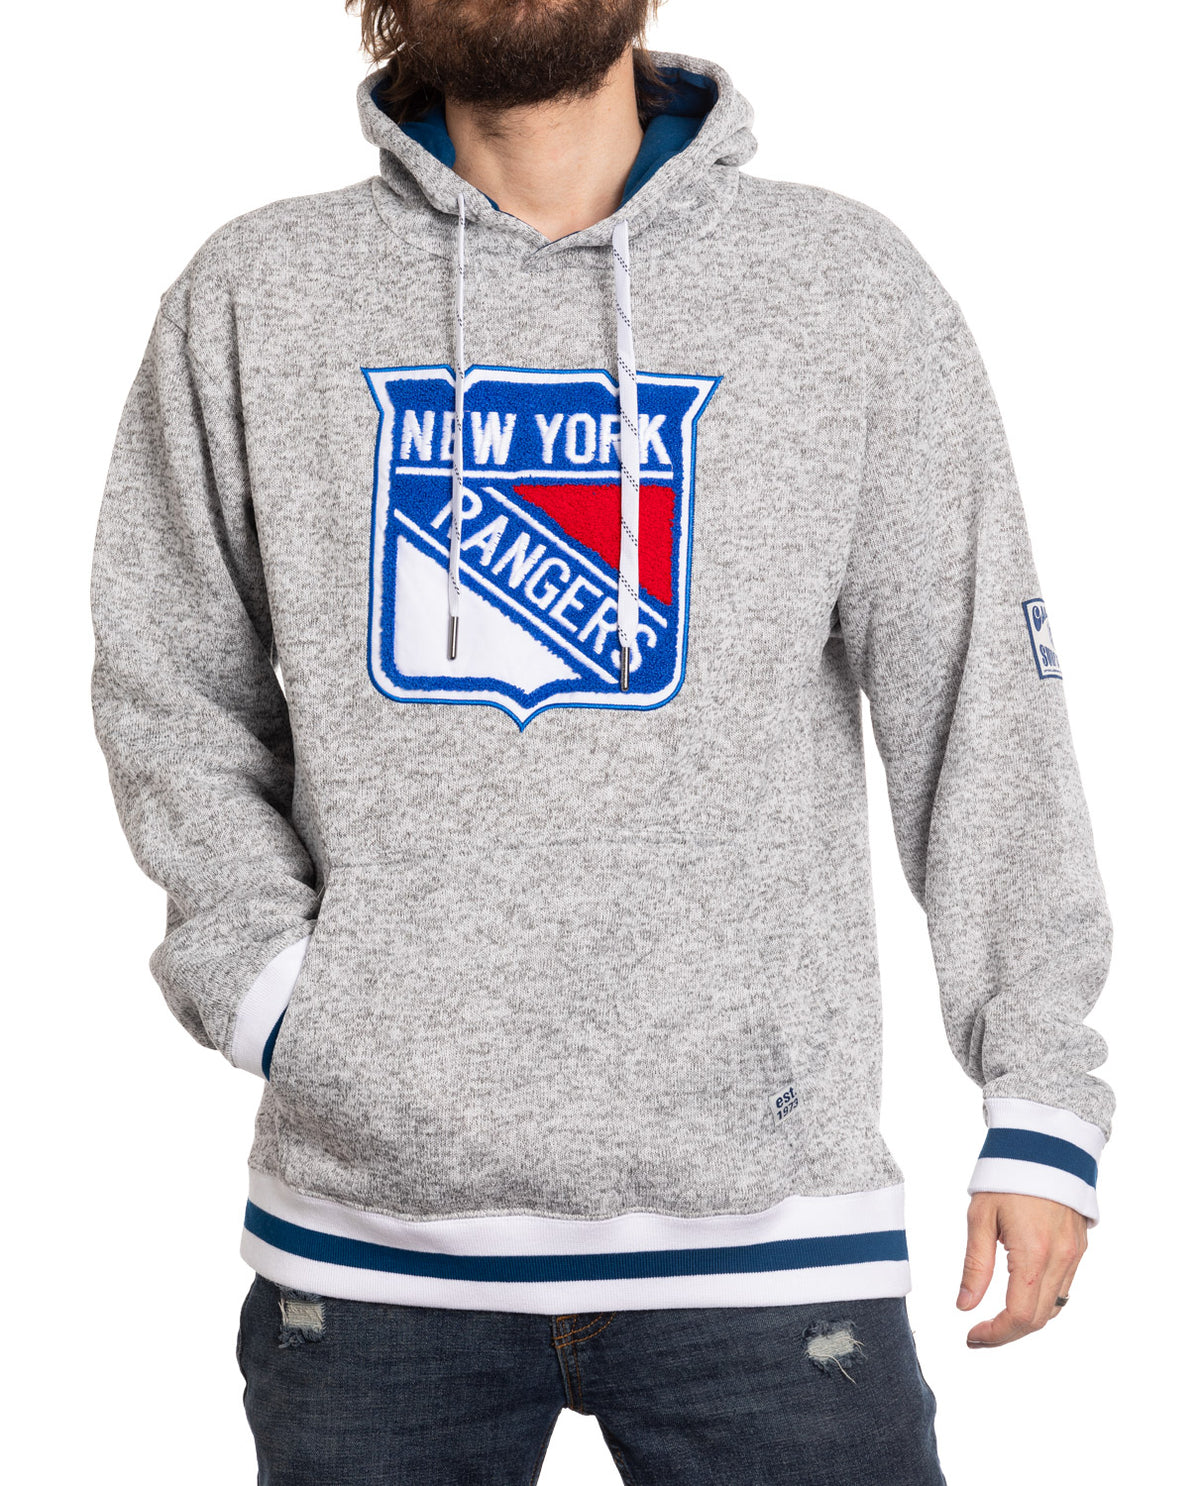 New York Rangers "Muskoka Style" Premium Chenille Woven Logo Hoodie